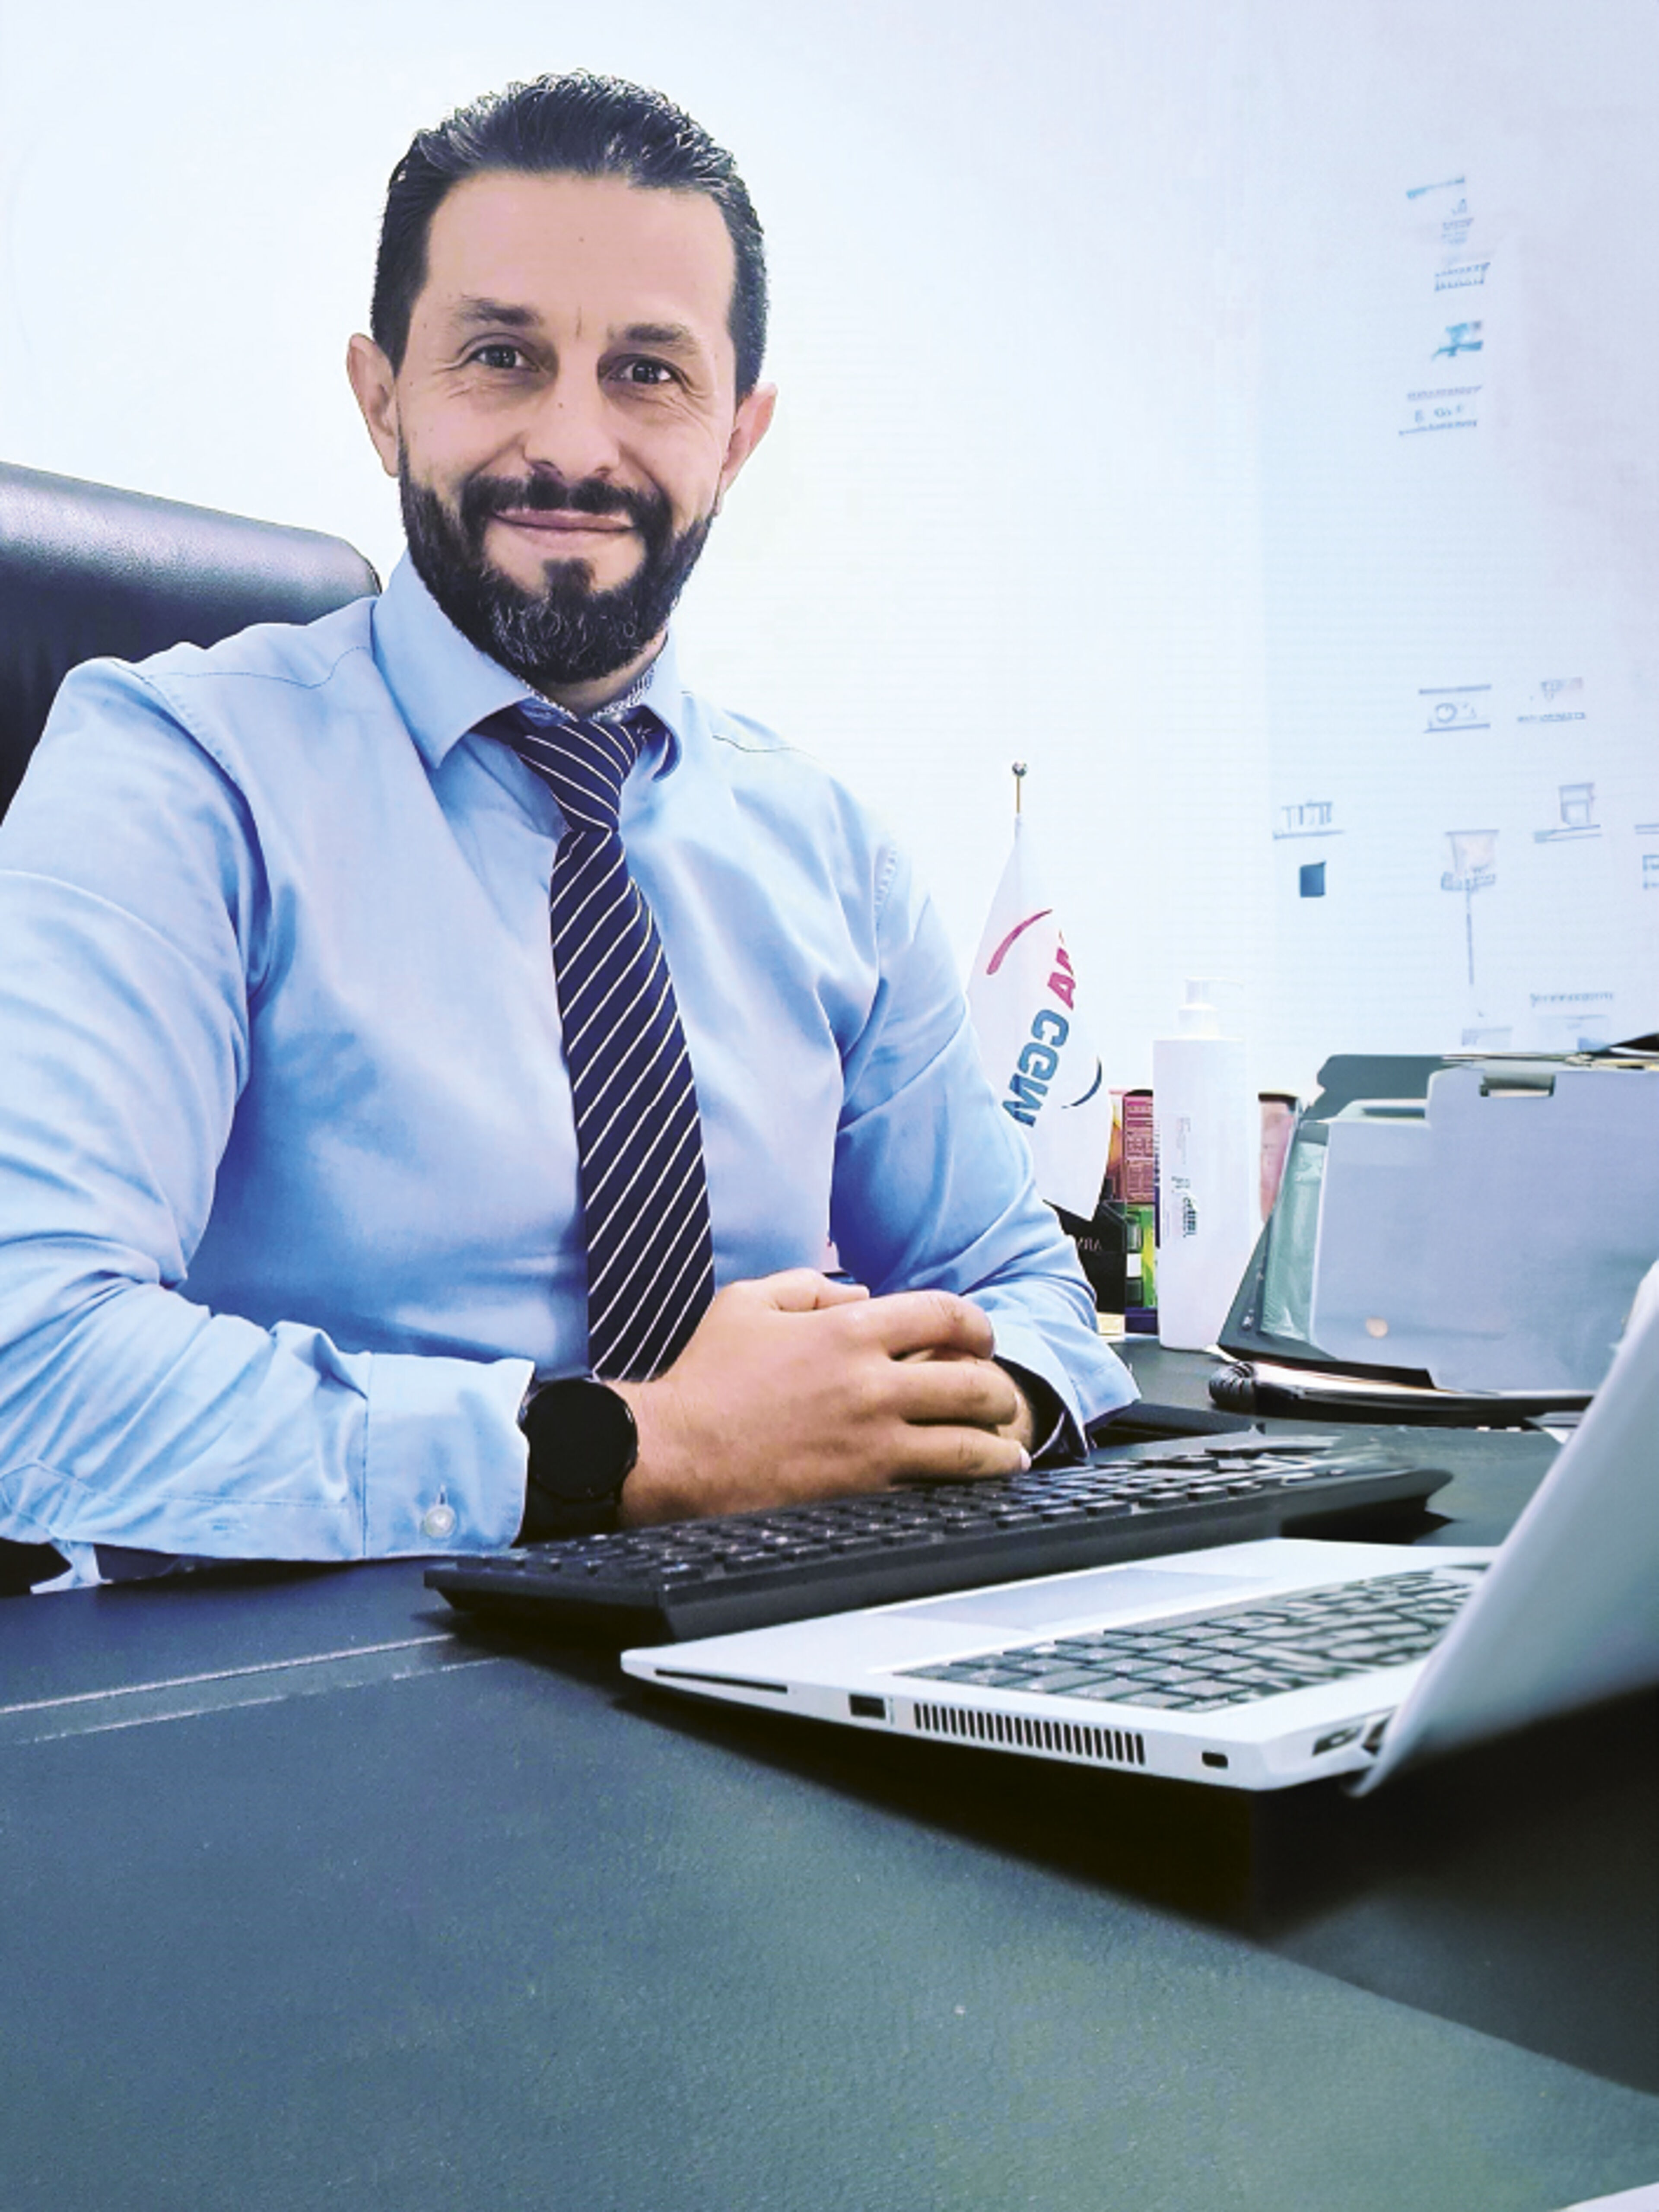 Un homme barbu en chemise bleue et cravate rayée sourit assis à son bureau avec un ordinateur portable, dégageant confiance et accessibilité.